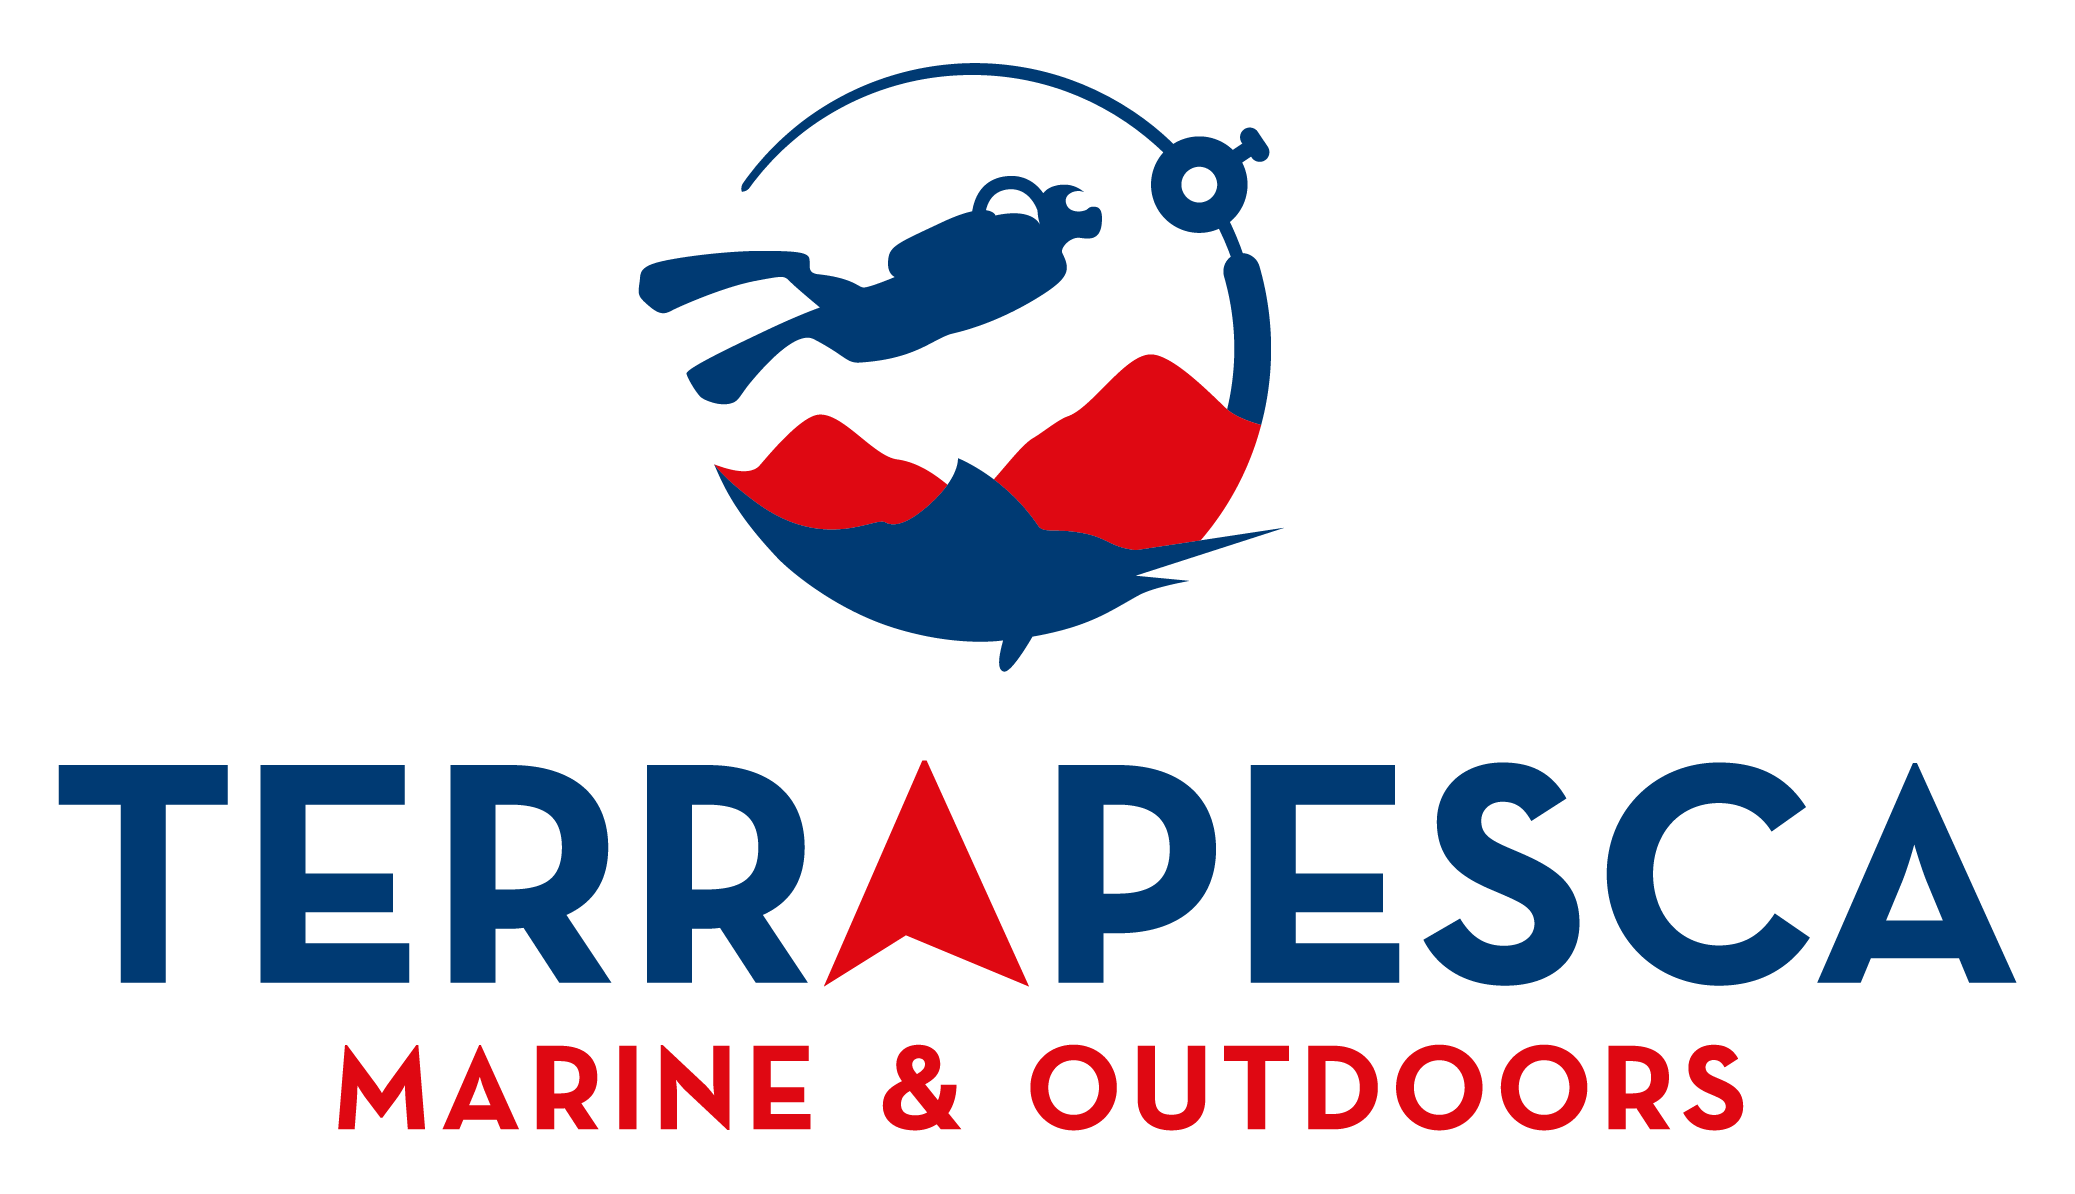 Terrapesca Marine & Outdoors - Tienda Online De Pesca Deportiva México